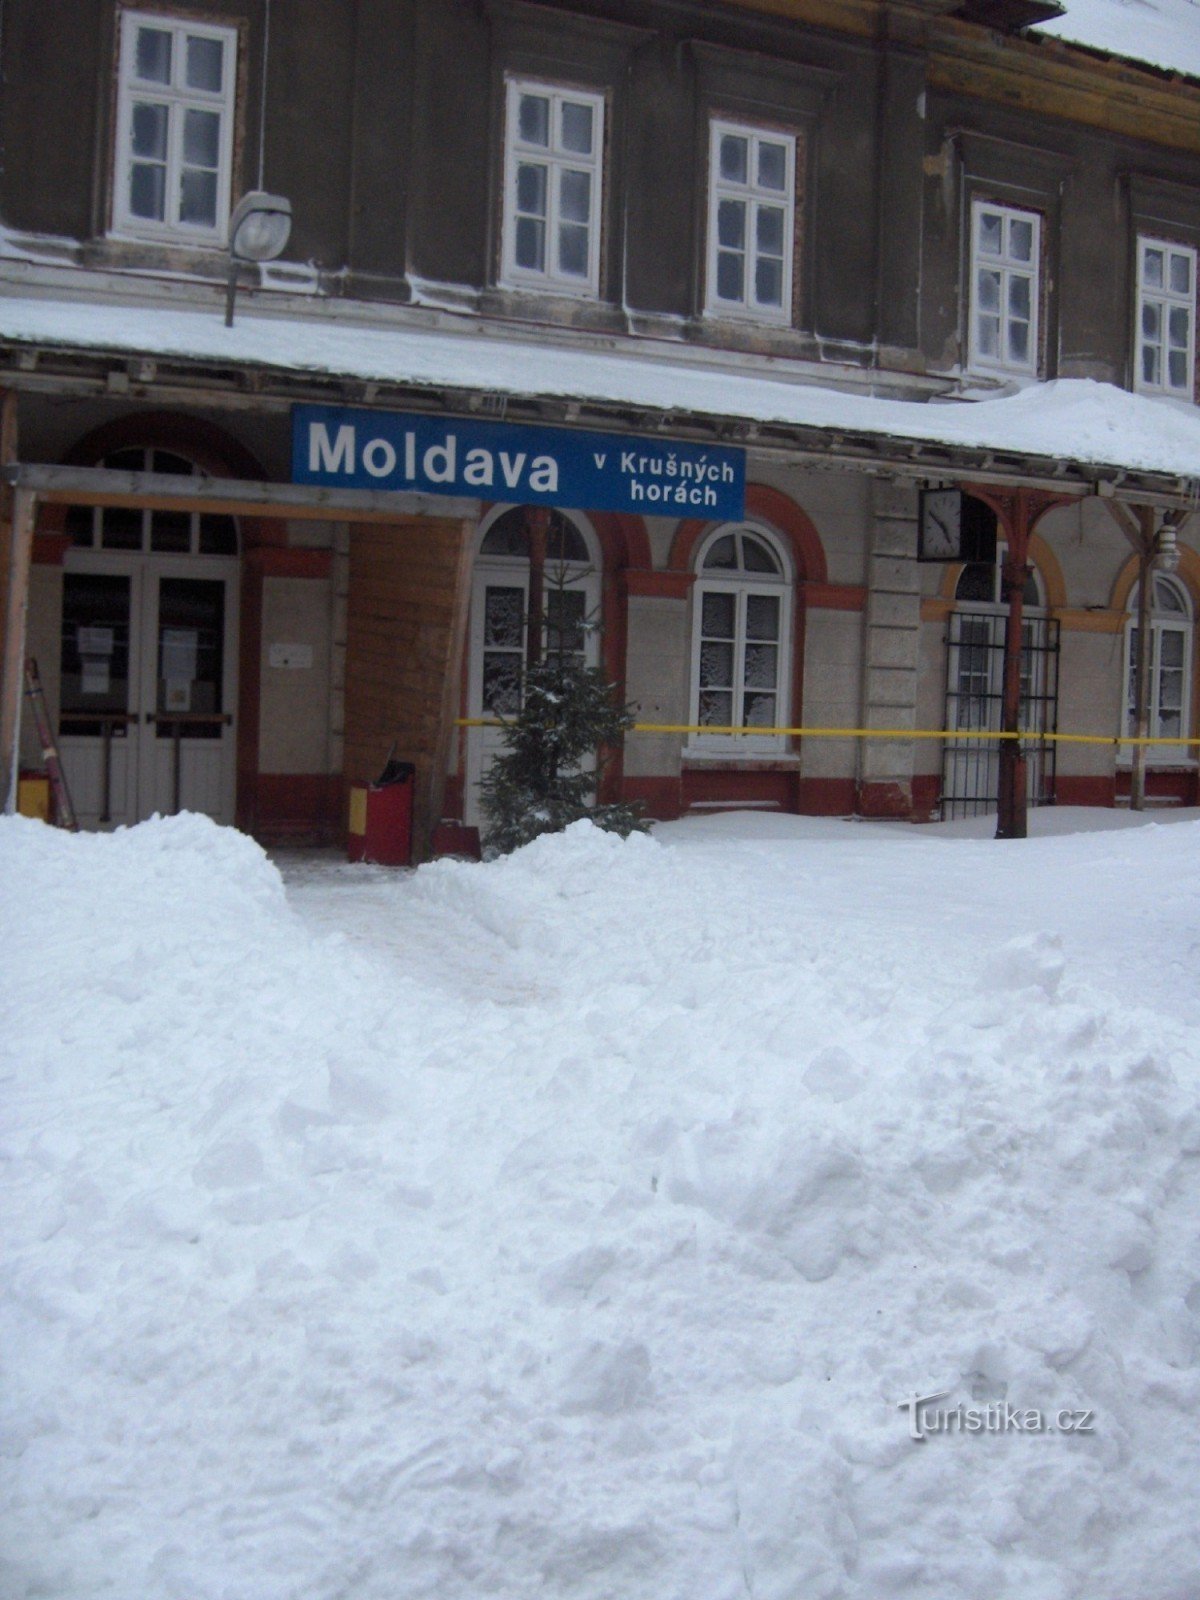 Dworzec kolejowy w Mołdawii